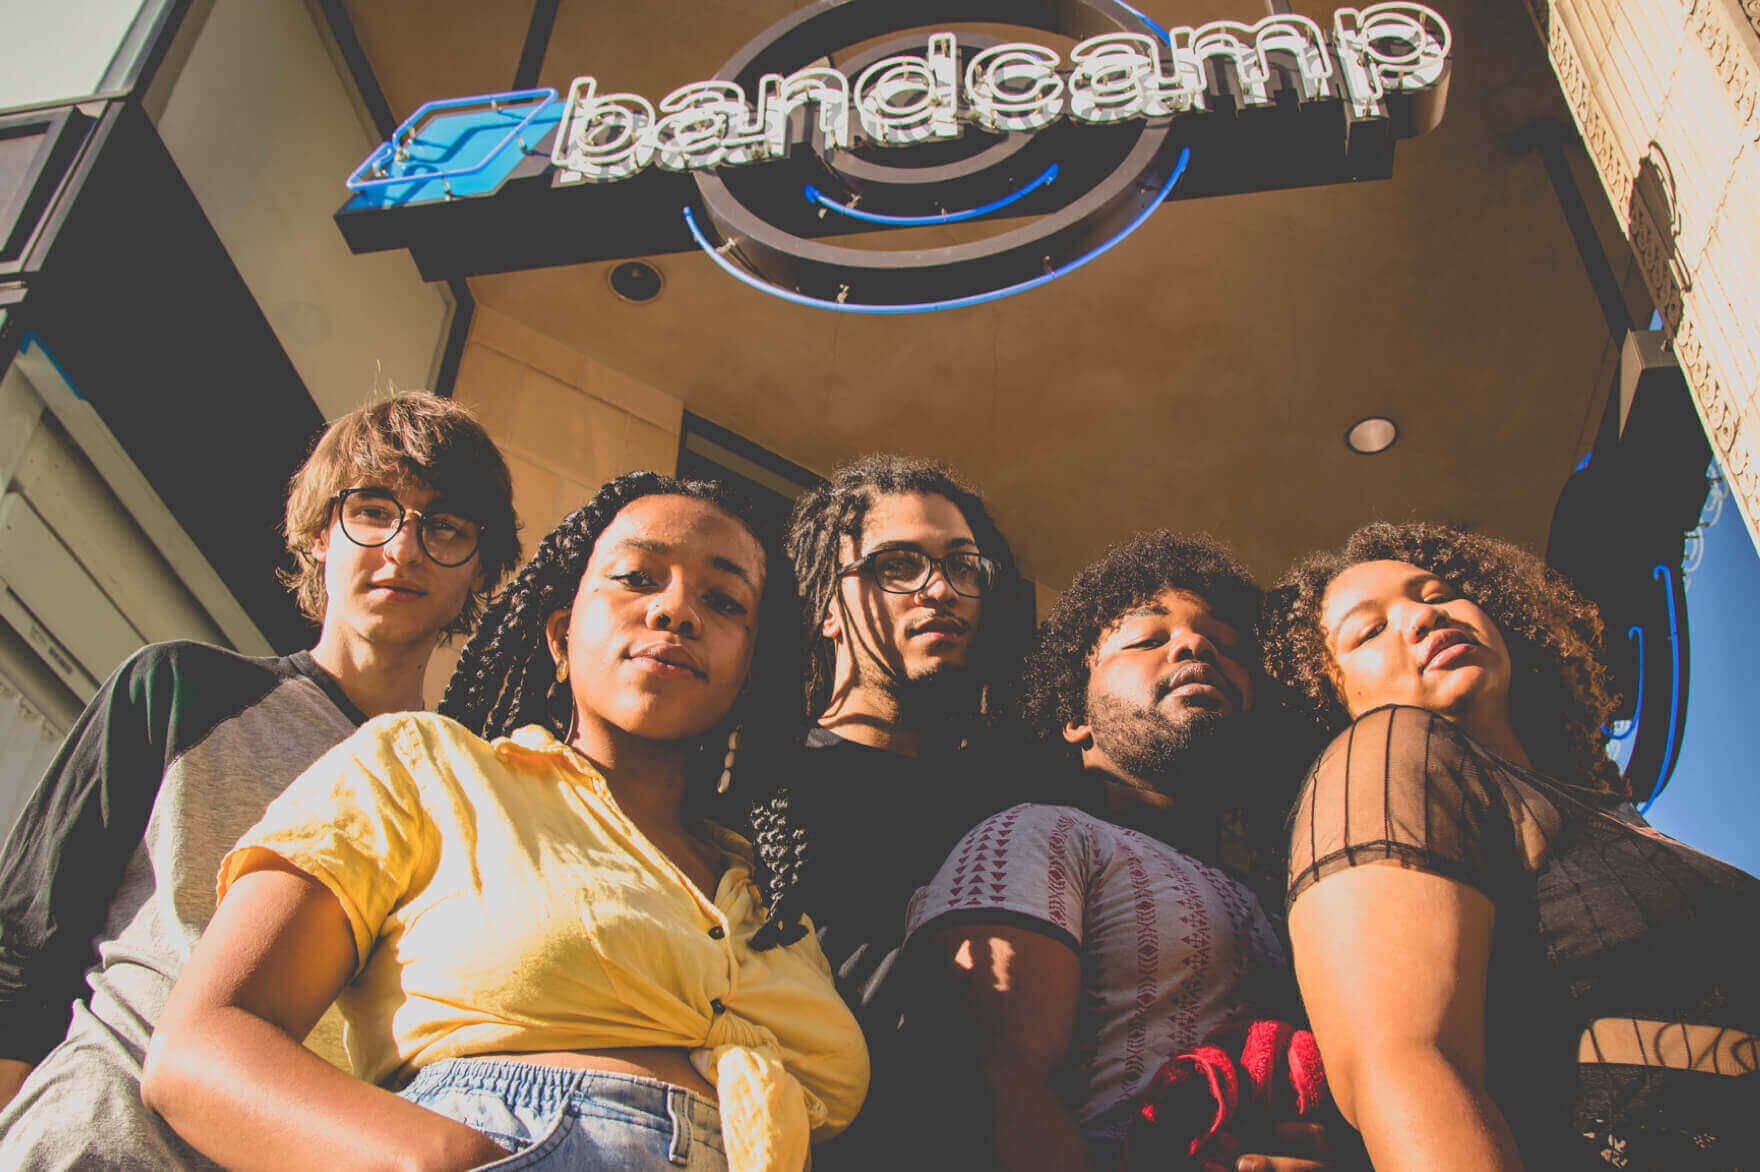 🥴 Songtradr звільнив 50% працівників, коли придбав Bandcamp